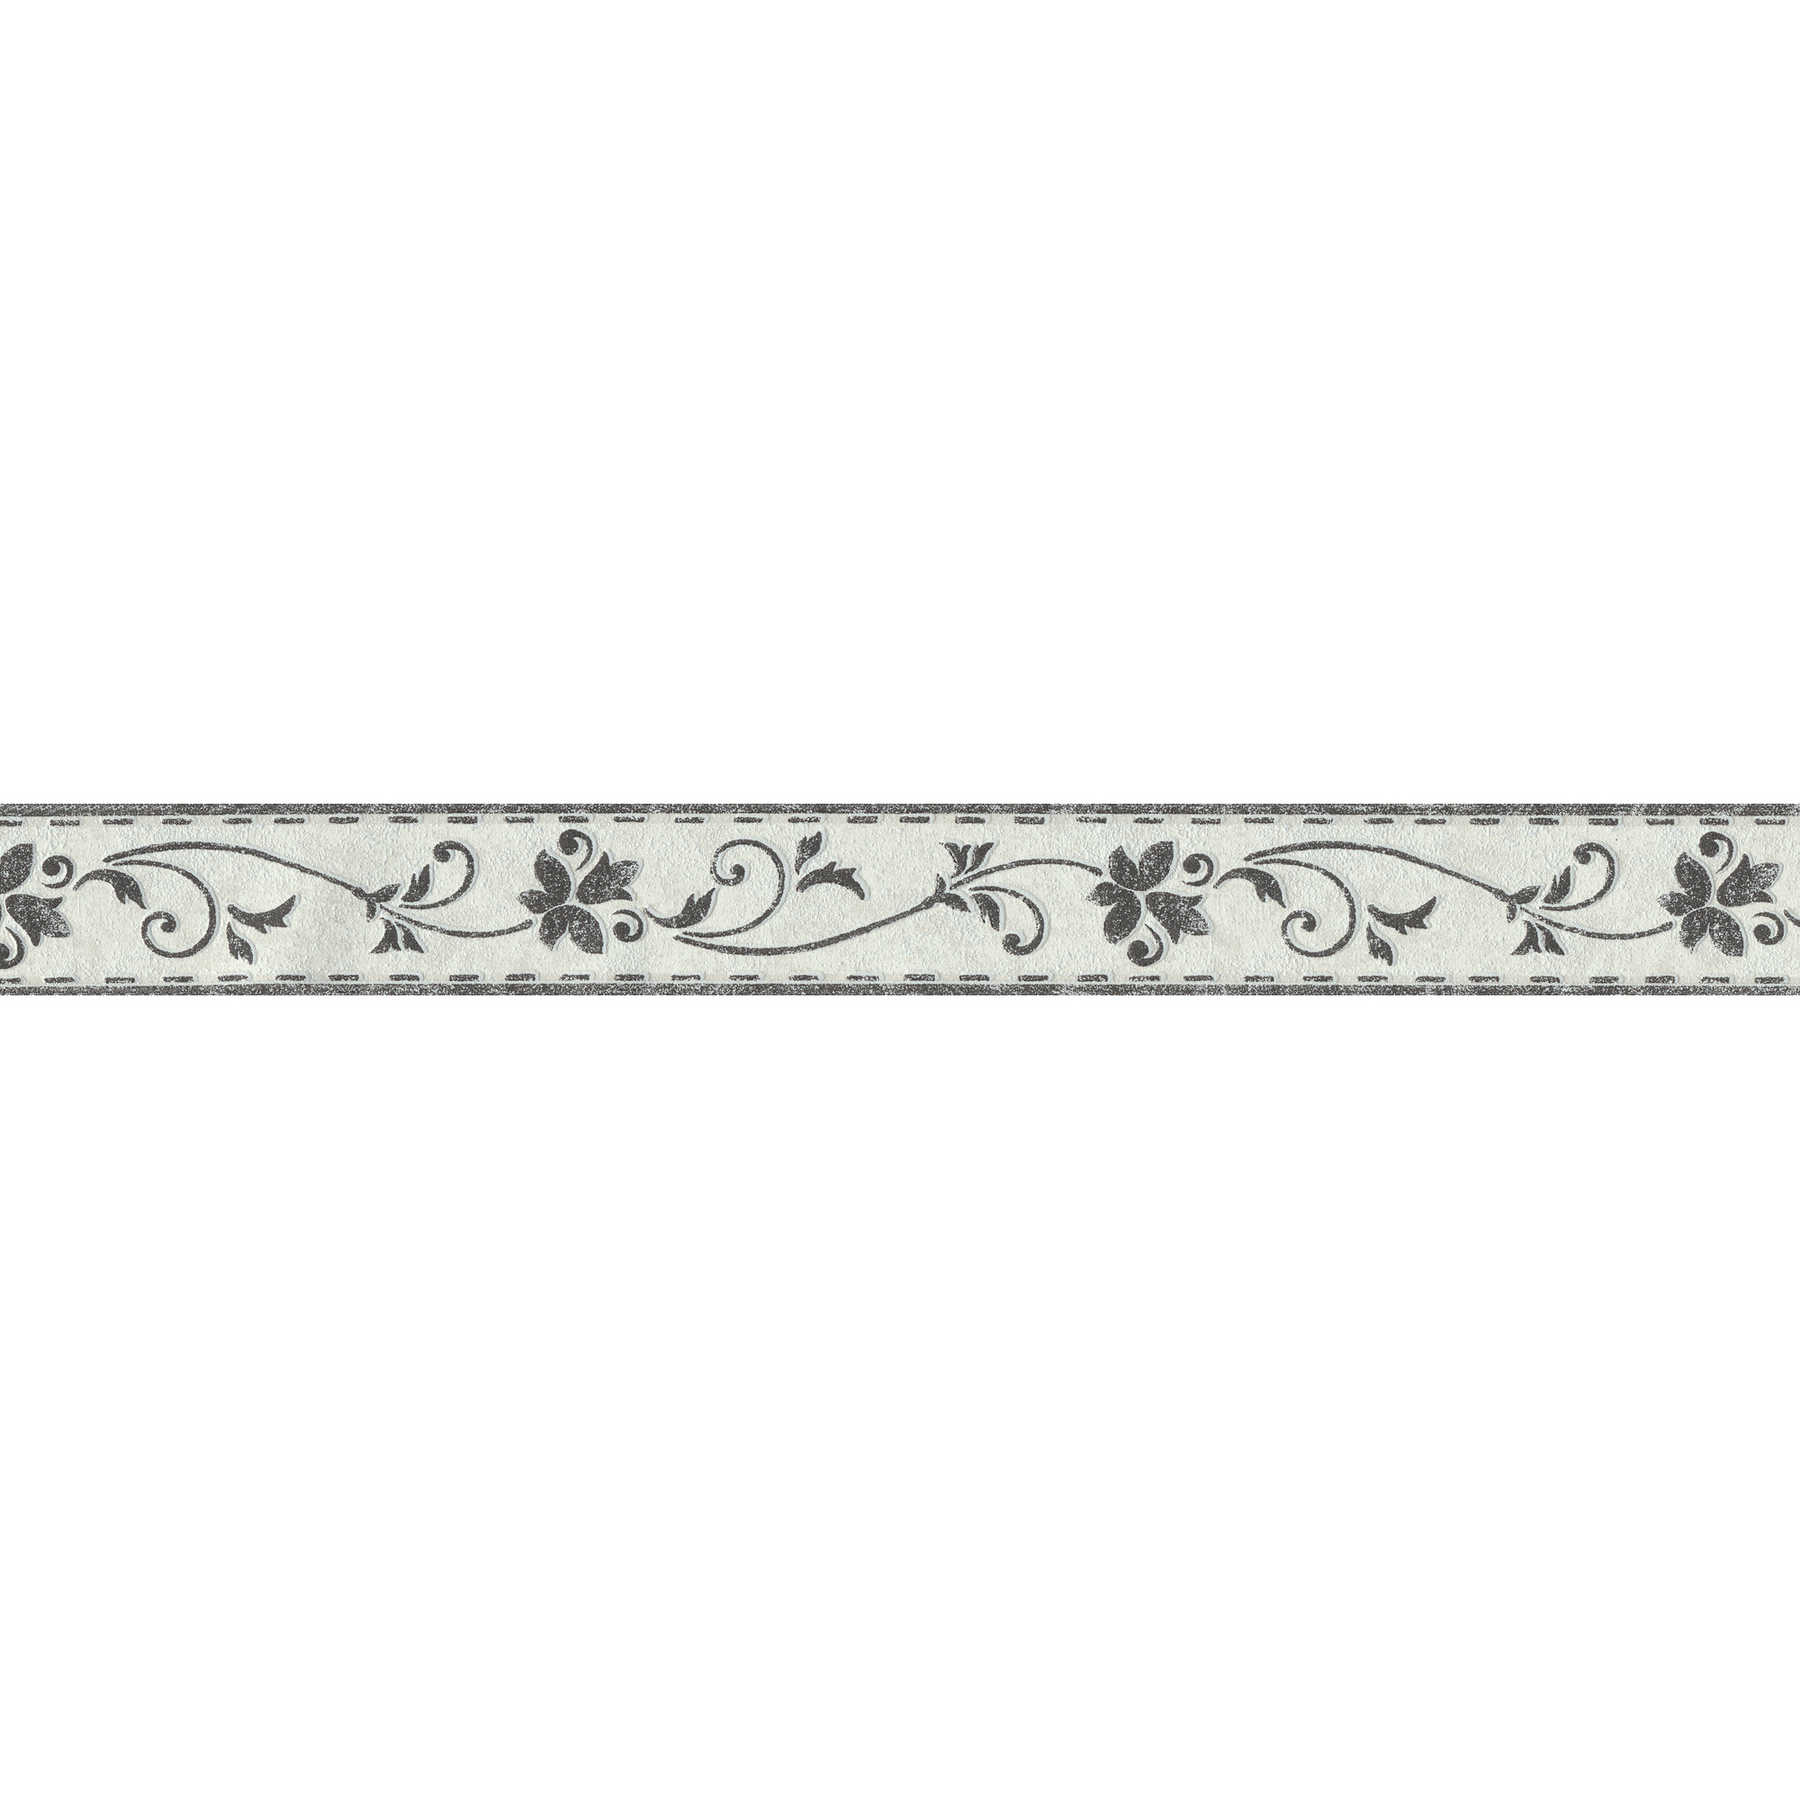         Zarcillos florales de borde estrecho en aspecto usado - Negro, Gris
    